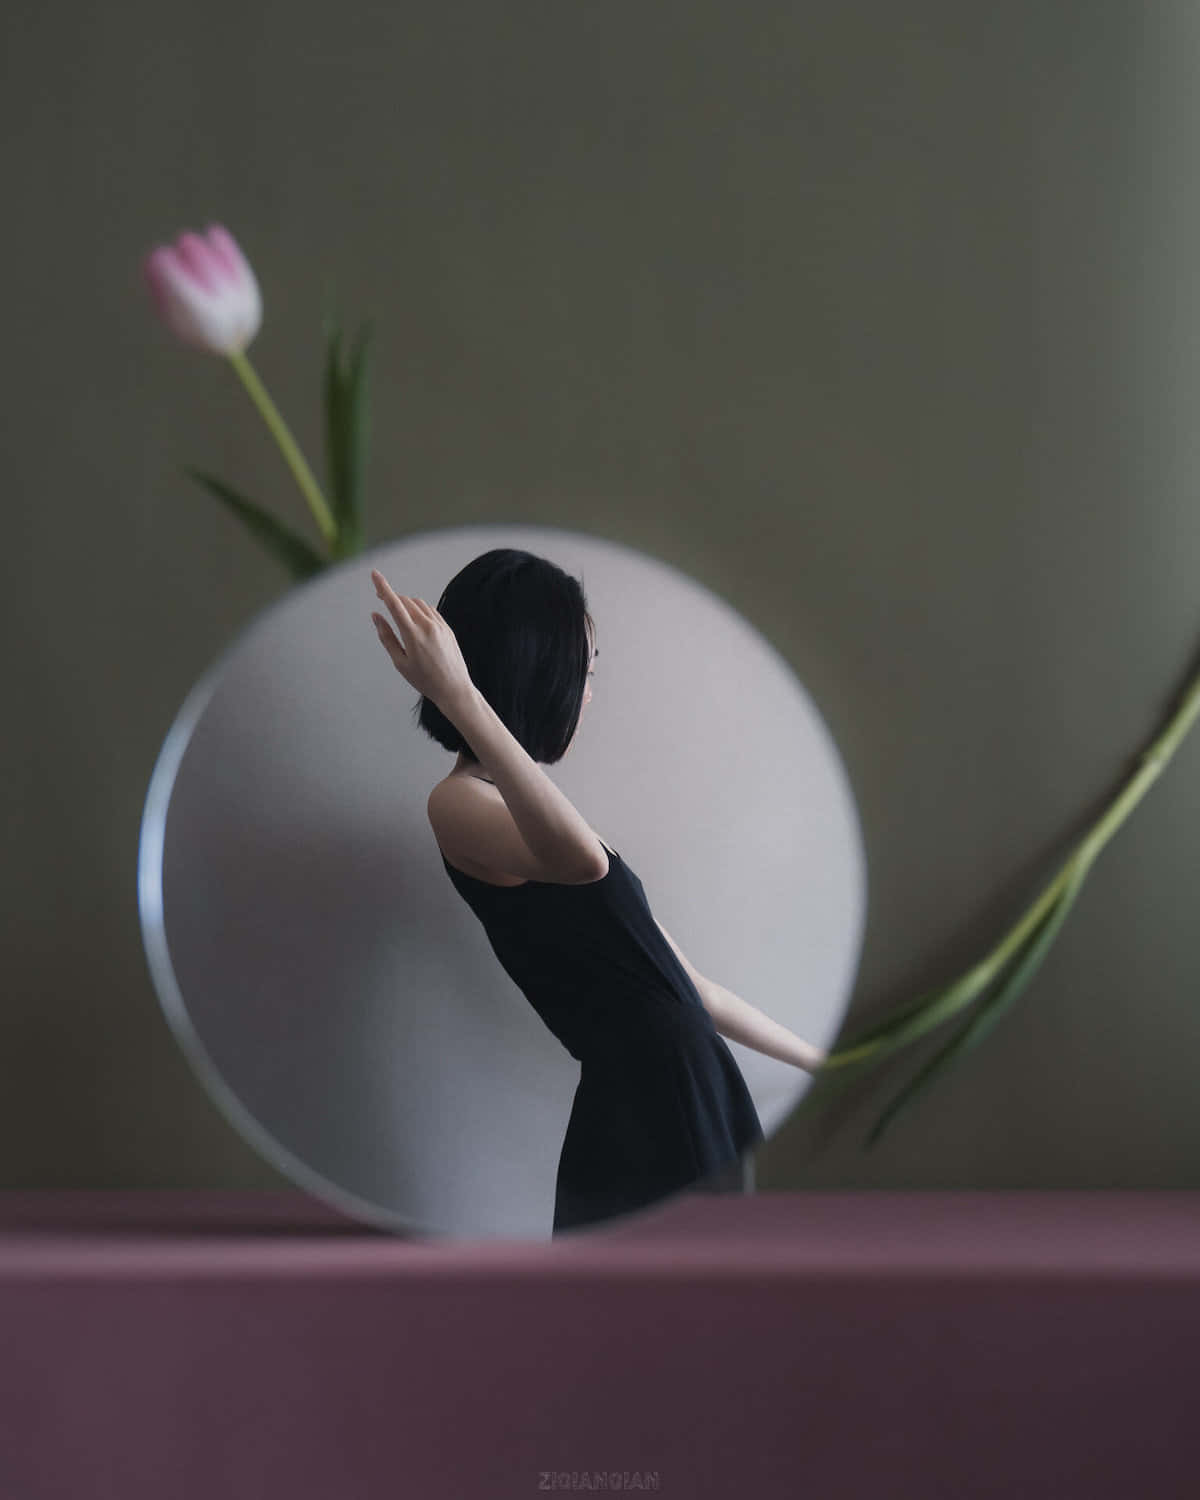 Imagende Una Mujer Reflejada En Un Espejo Con Una Flor De Tulipán.